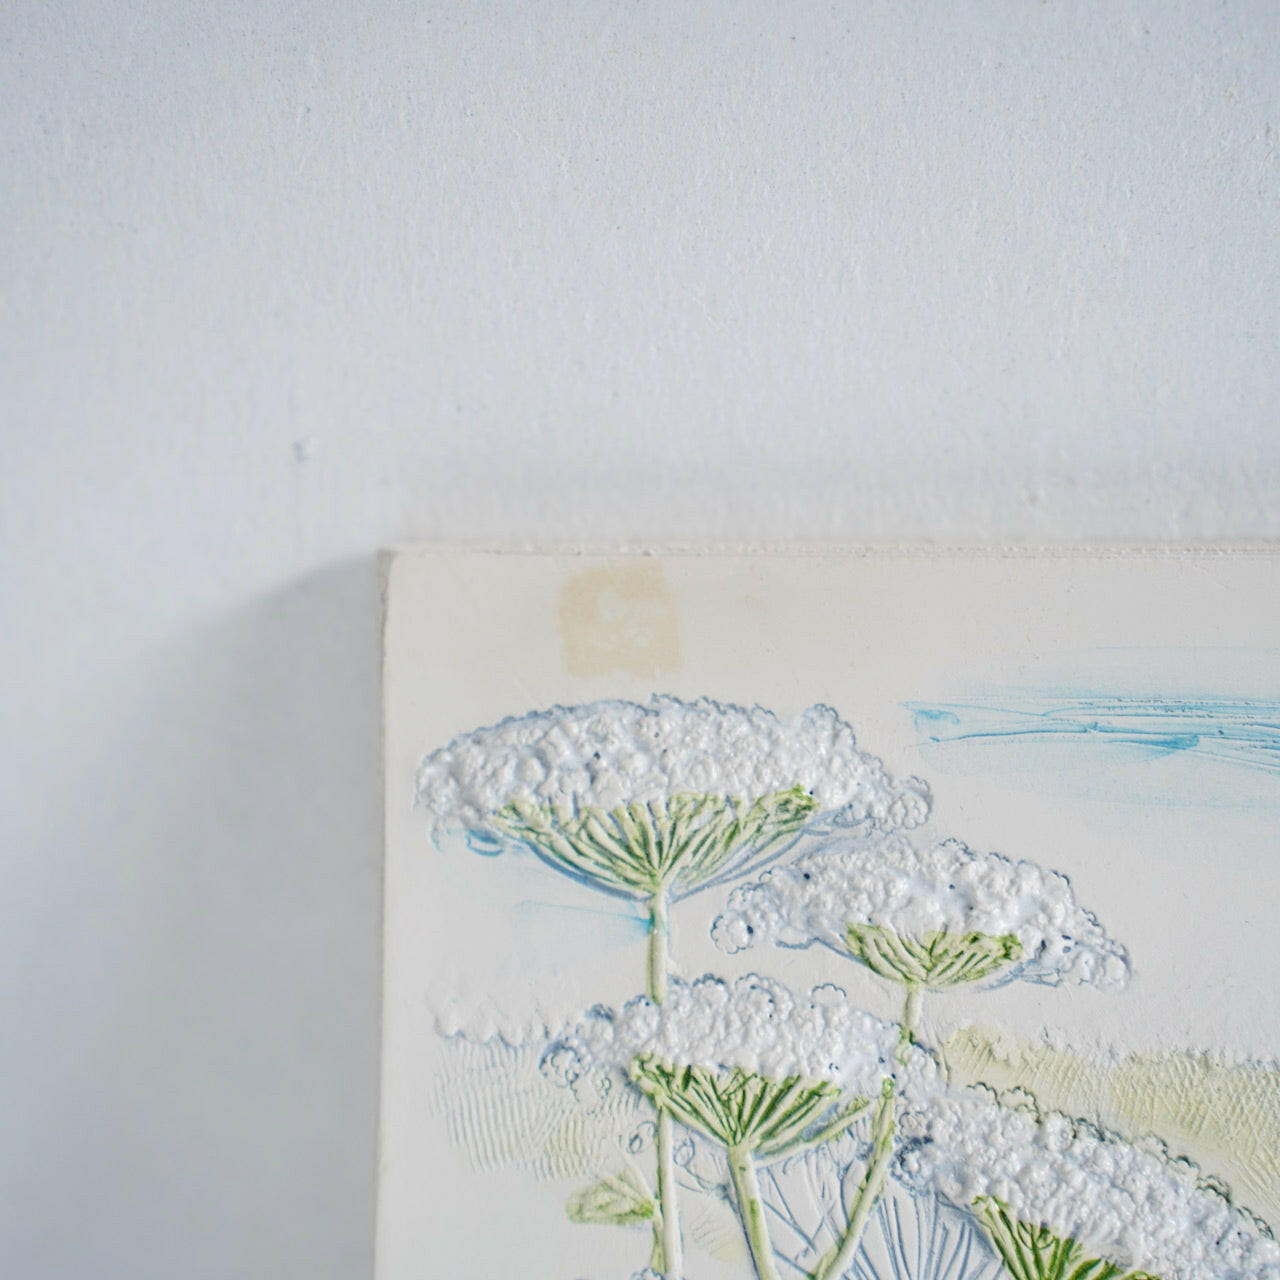 訳あり ジイ・ガントフタ 大サイズ陶板 No. 865「アザミとレースフラワーの咲く風景」 陶板 Jie Gantofta   